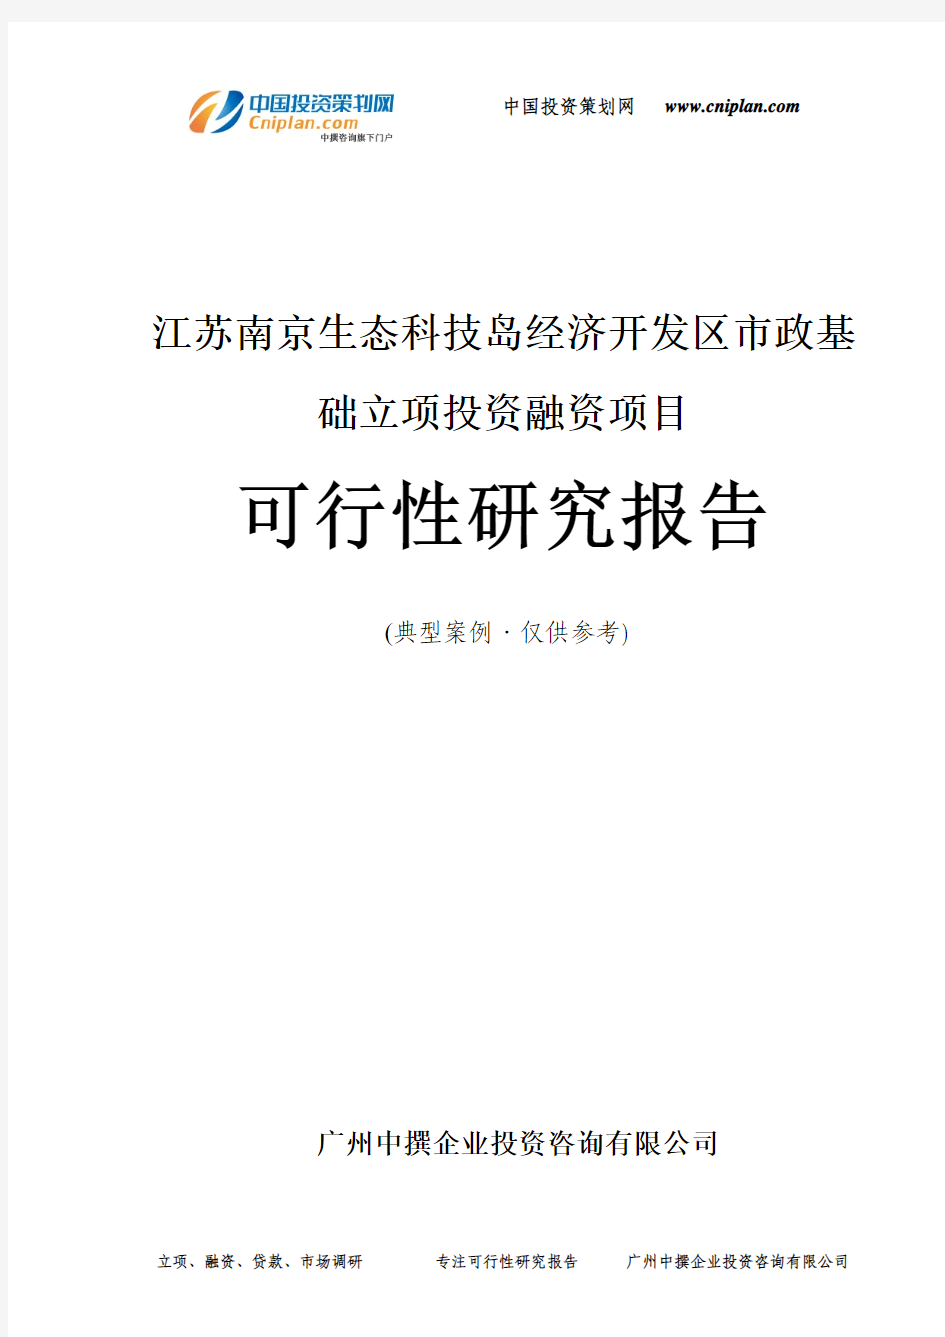 江苏南京生态科技岛经济开发区市政基础融资投资立项项目可行性研究报告(中撰咨询)